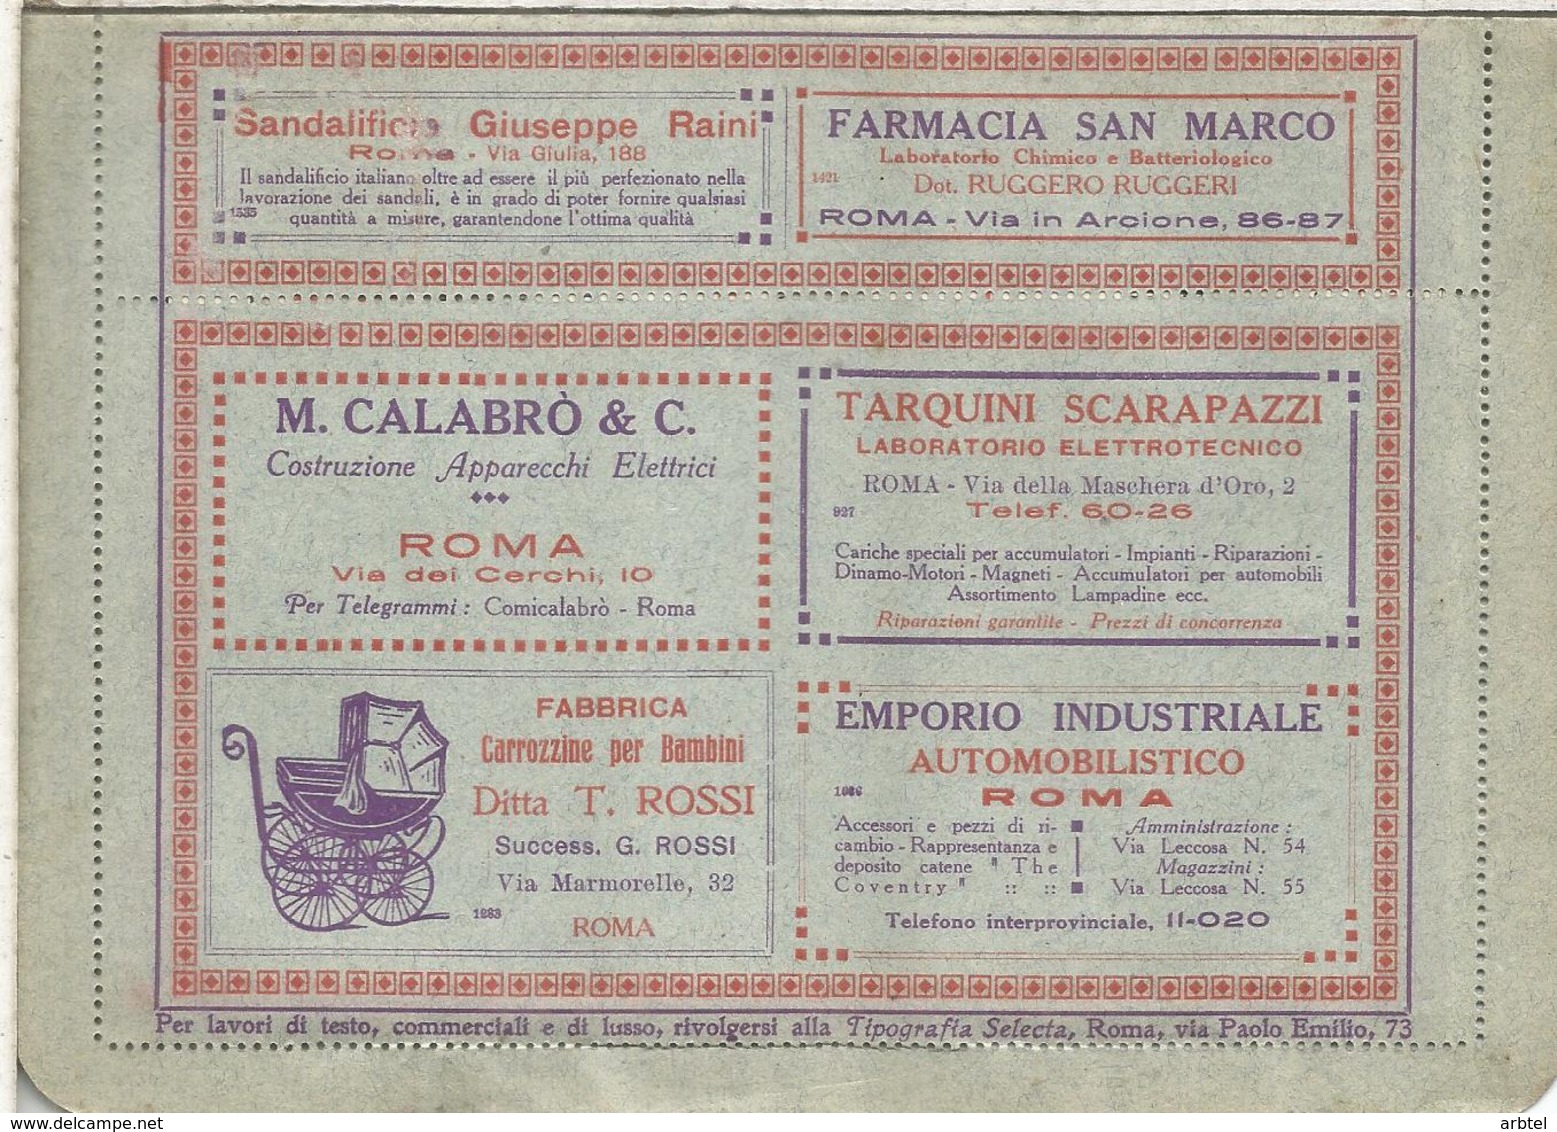 ITALIA BLP HACIA 1920S CON PUBLICIDAD AGUA WATER PELO HAIR PHARMACY AUTOMOVIL CAR CHILDREN ELECTRICIDAD MEDICINA BANK CA - Farmacia